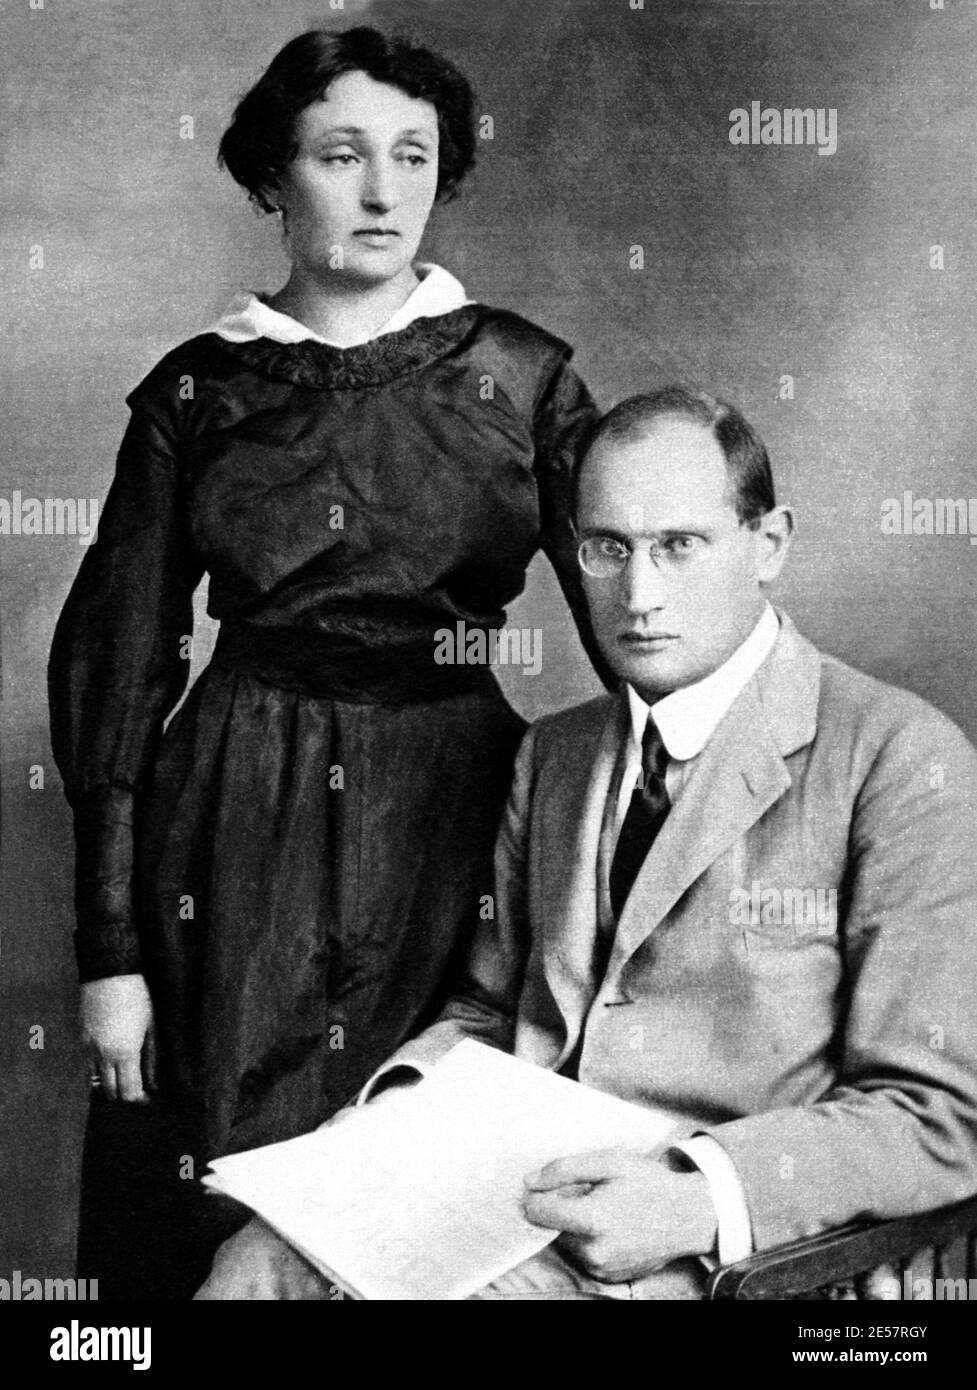 1918 c. , ITALY : The italian psychoanalyst  EDOARDO WEISS  ( 1889 -  1970 ) with his wife VANDA . Scholar with Sigmund Freud in Wien , author of studies ' Elementi di psicoanalisi ' ( 1931 ) , ' Struttura e dinamica della mente umana ' ( 1960 ) - PSICANALISI - PSICOANALISI - PSICANALISTA - PSICOANALISTA - psicosomatica - marito e moglie - portrait - ritratto - glasses - occhiali - collar - colletto - tie - cravatta - analista  ----   Archivio GBB Stock Photo